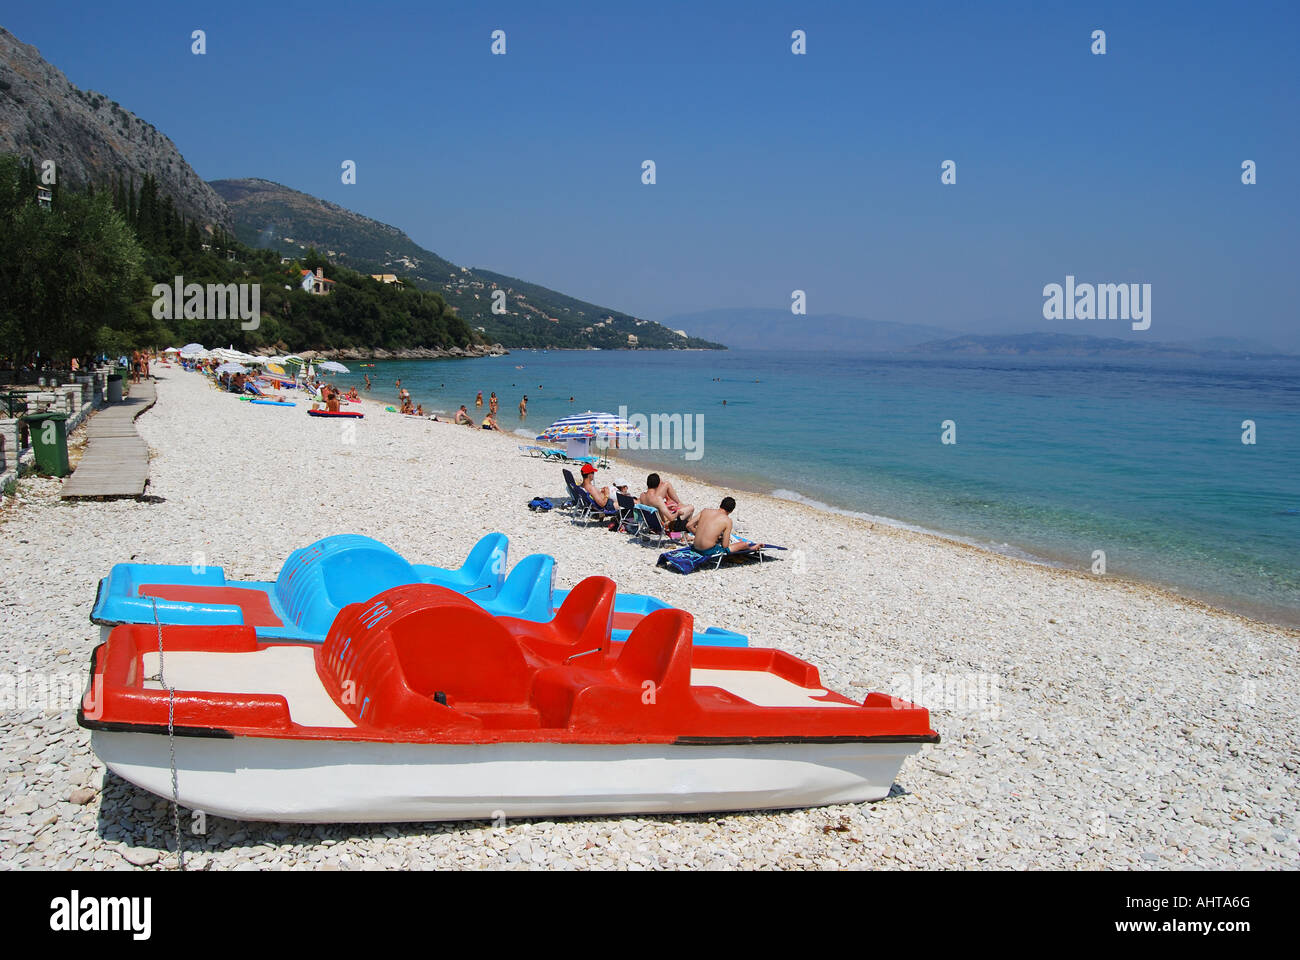 Barbati Beach, Barbati, Corfu, Ionian Islands, Greece Stock Photo